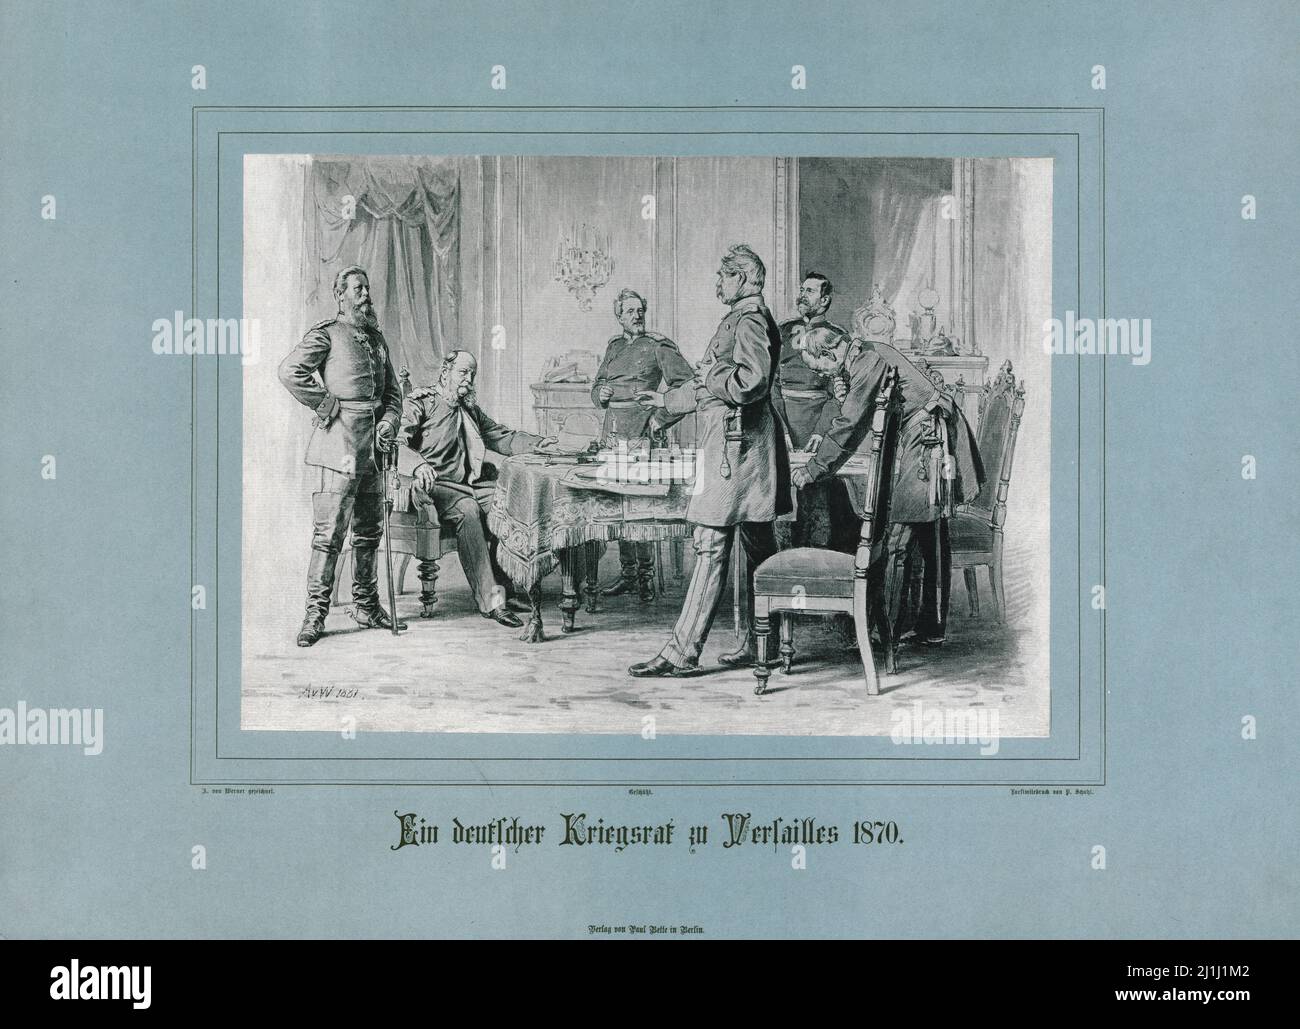 Litografia dell'imperatore tedesco Guglielmo i e del Consiglio di Versailles nel 1870. 1881 Foto Stock